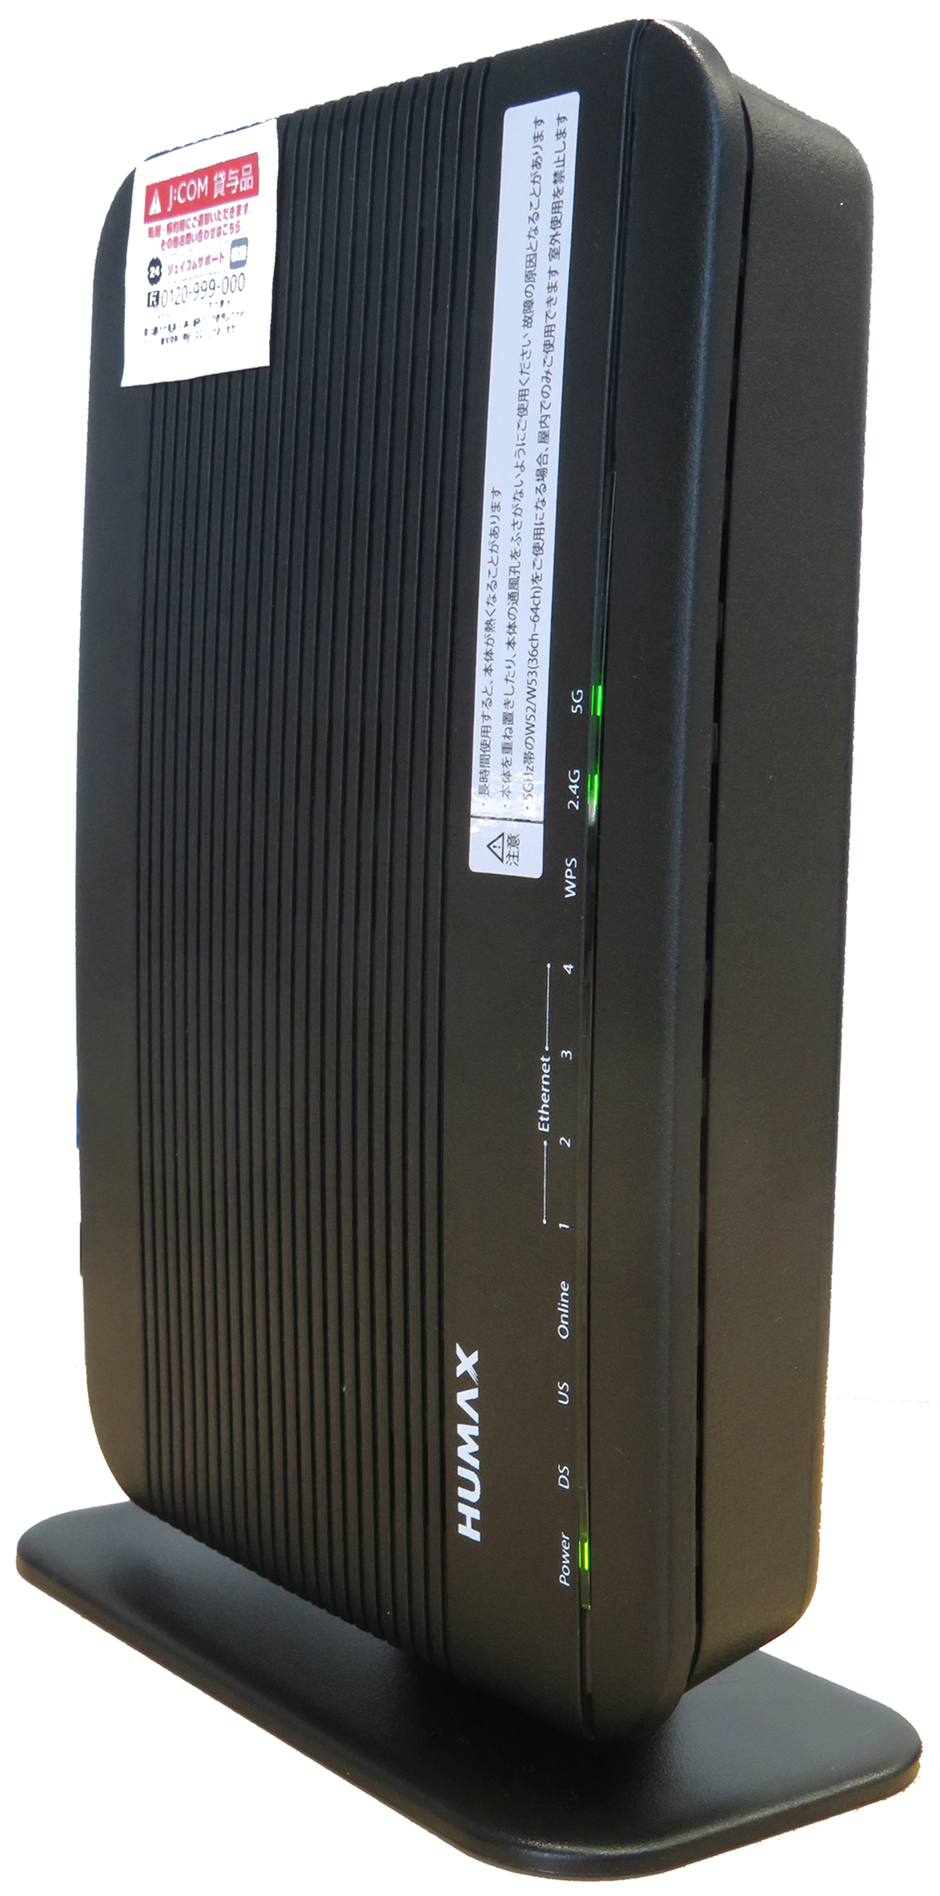 家庭内ネットワークサービス J Com Wi Fi 無線モデム設定ガイド Jcomサポート